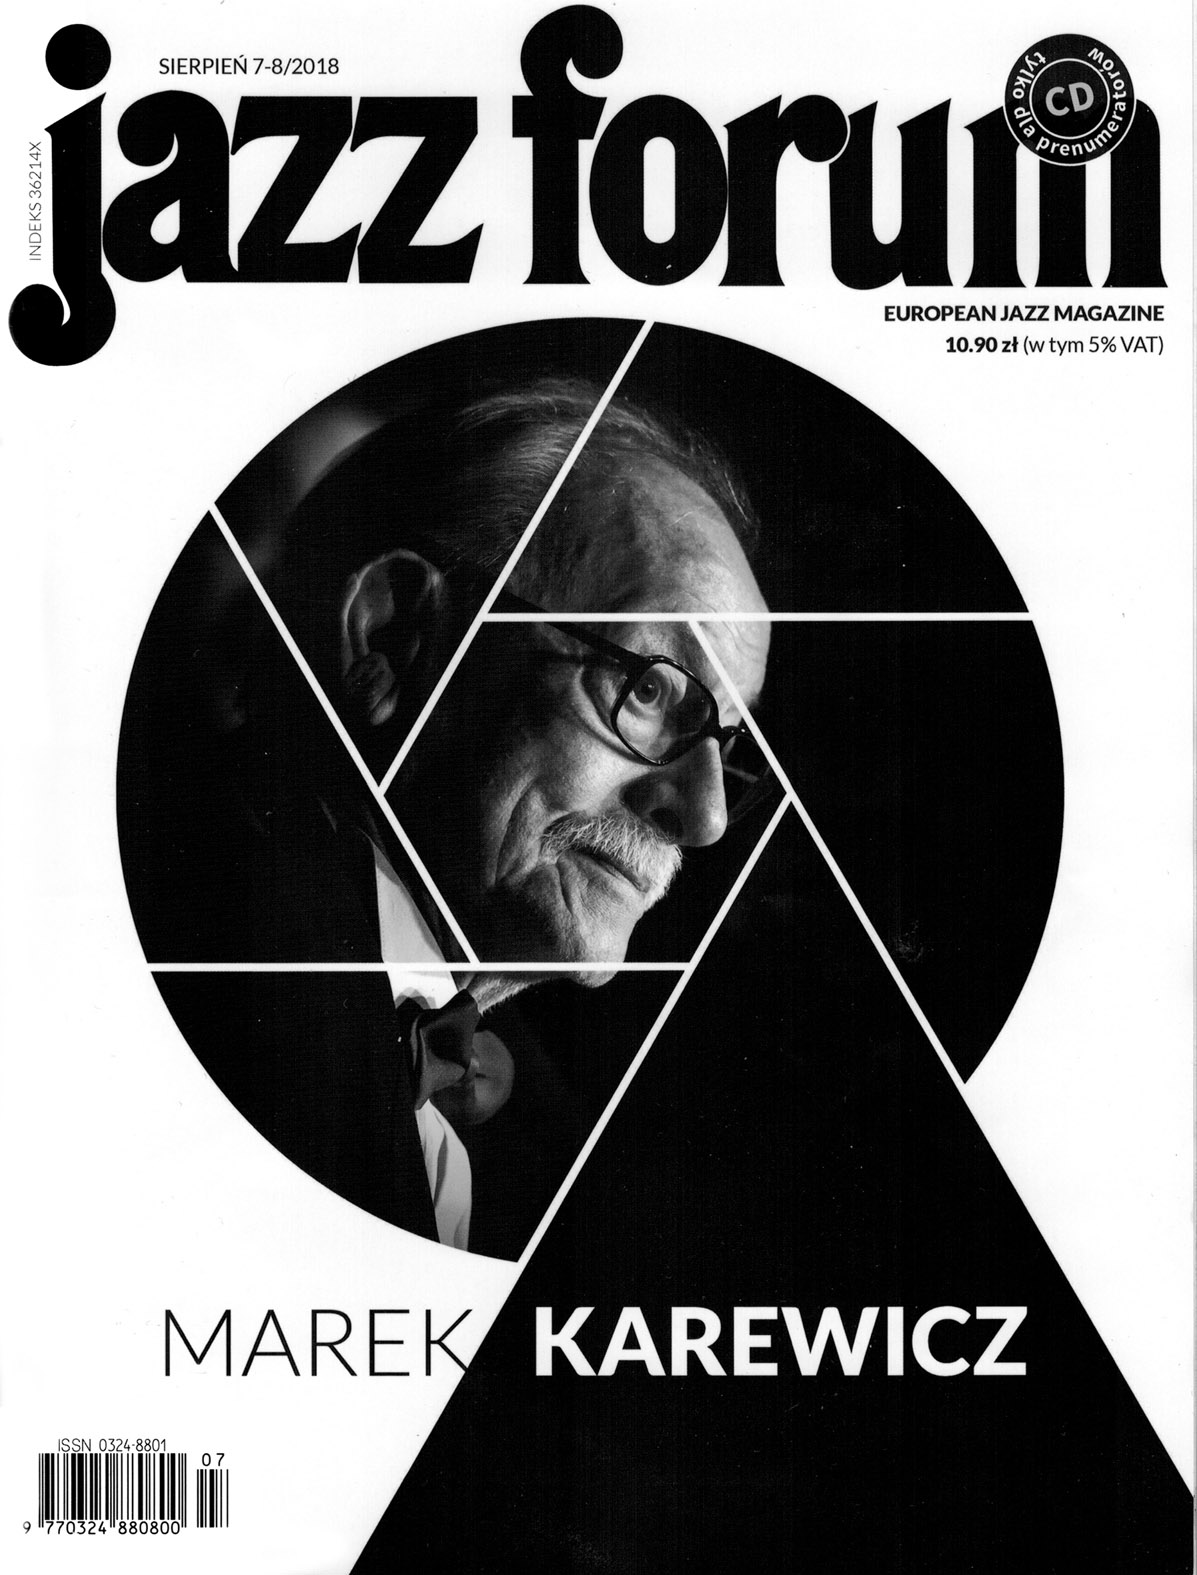 Jazz Forum 7-8/2018 - Rafał Sarnecki "Climbing Trees" article by Mirosław "Carlos" Kaczmarczyk